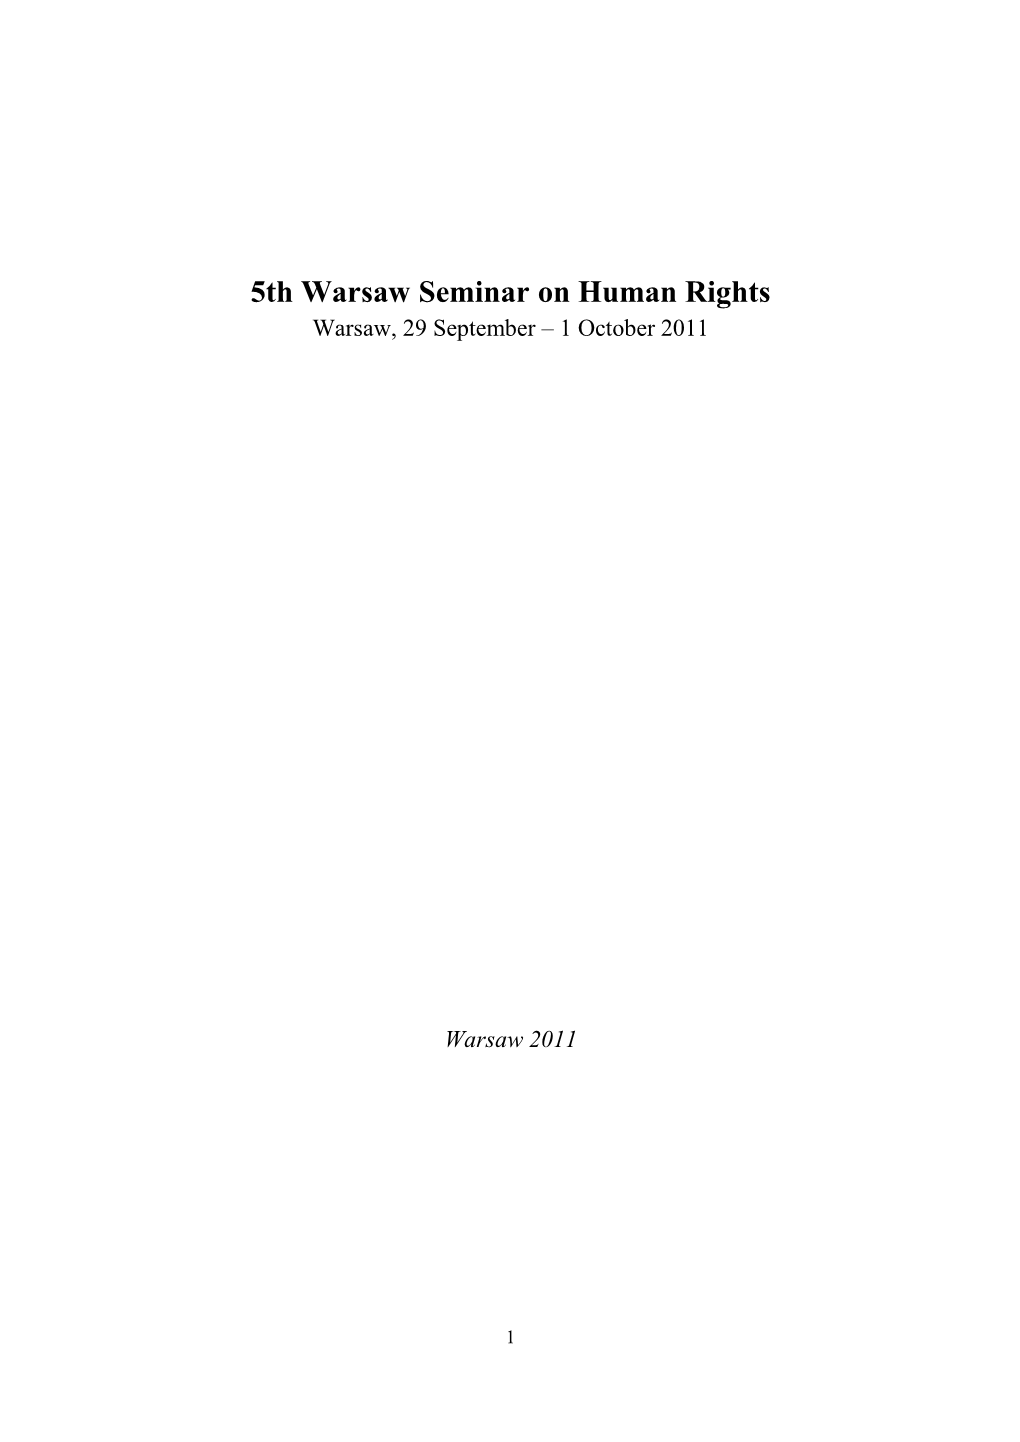 5Th Warsaw Seminar on Human Rights Warsaw, 29 September – 1 October 2011